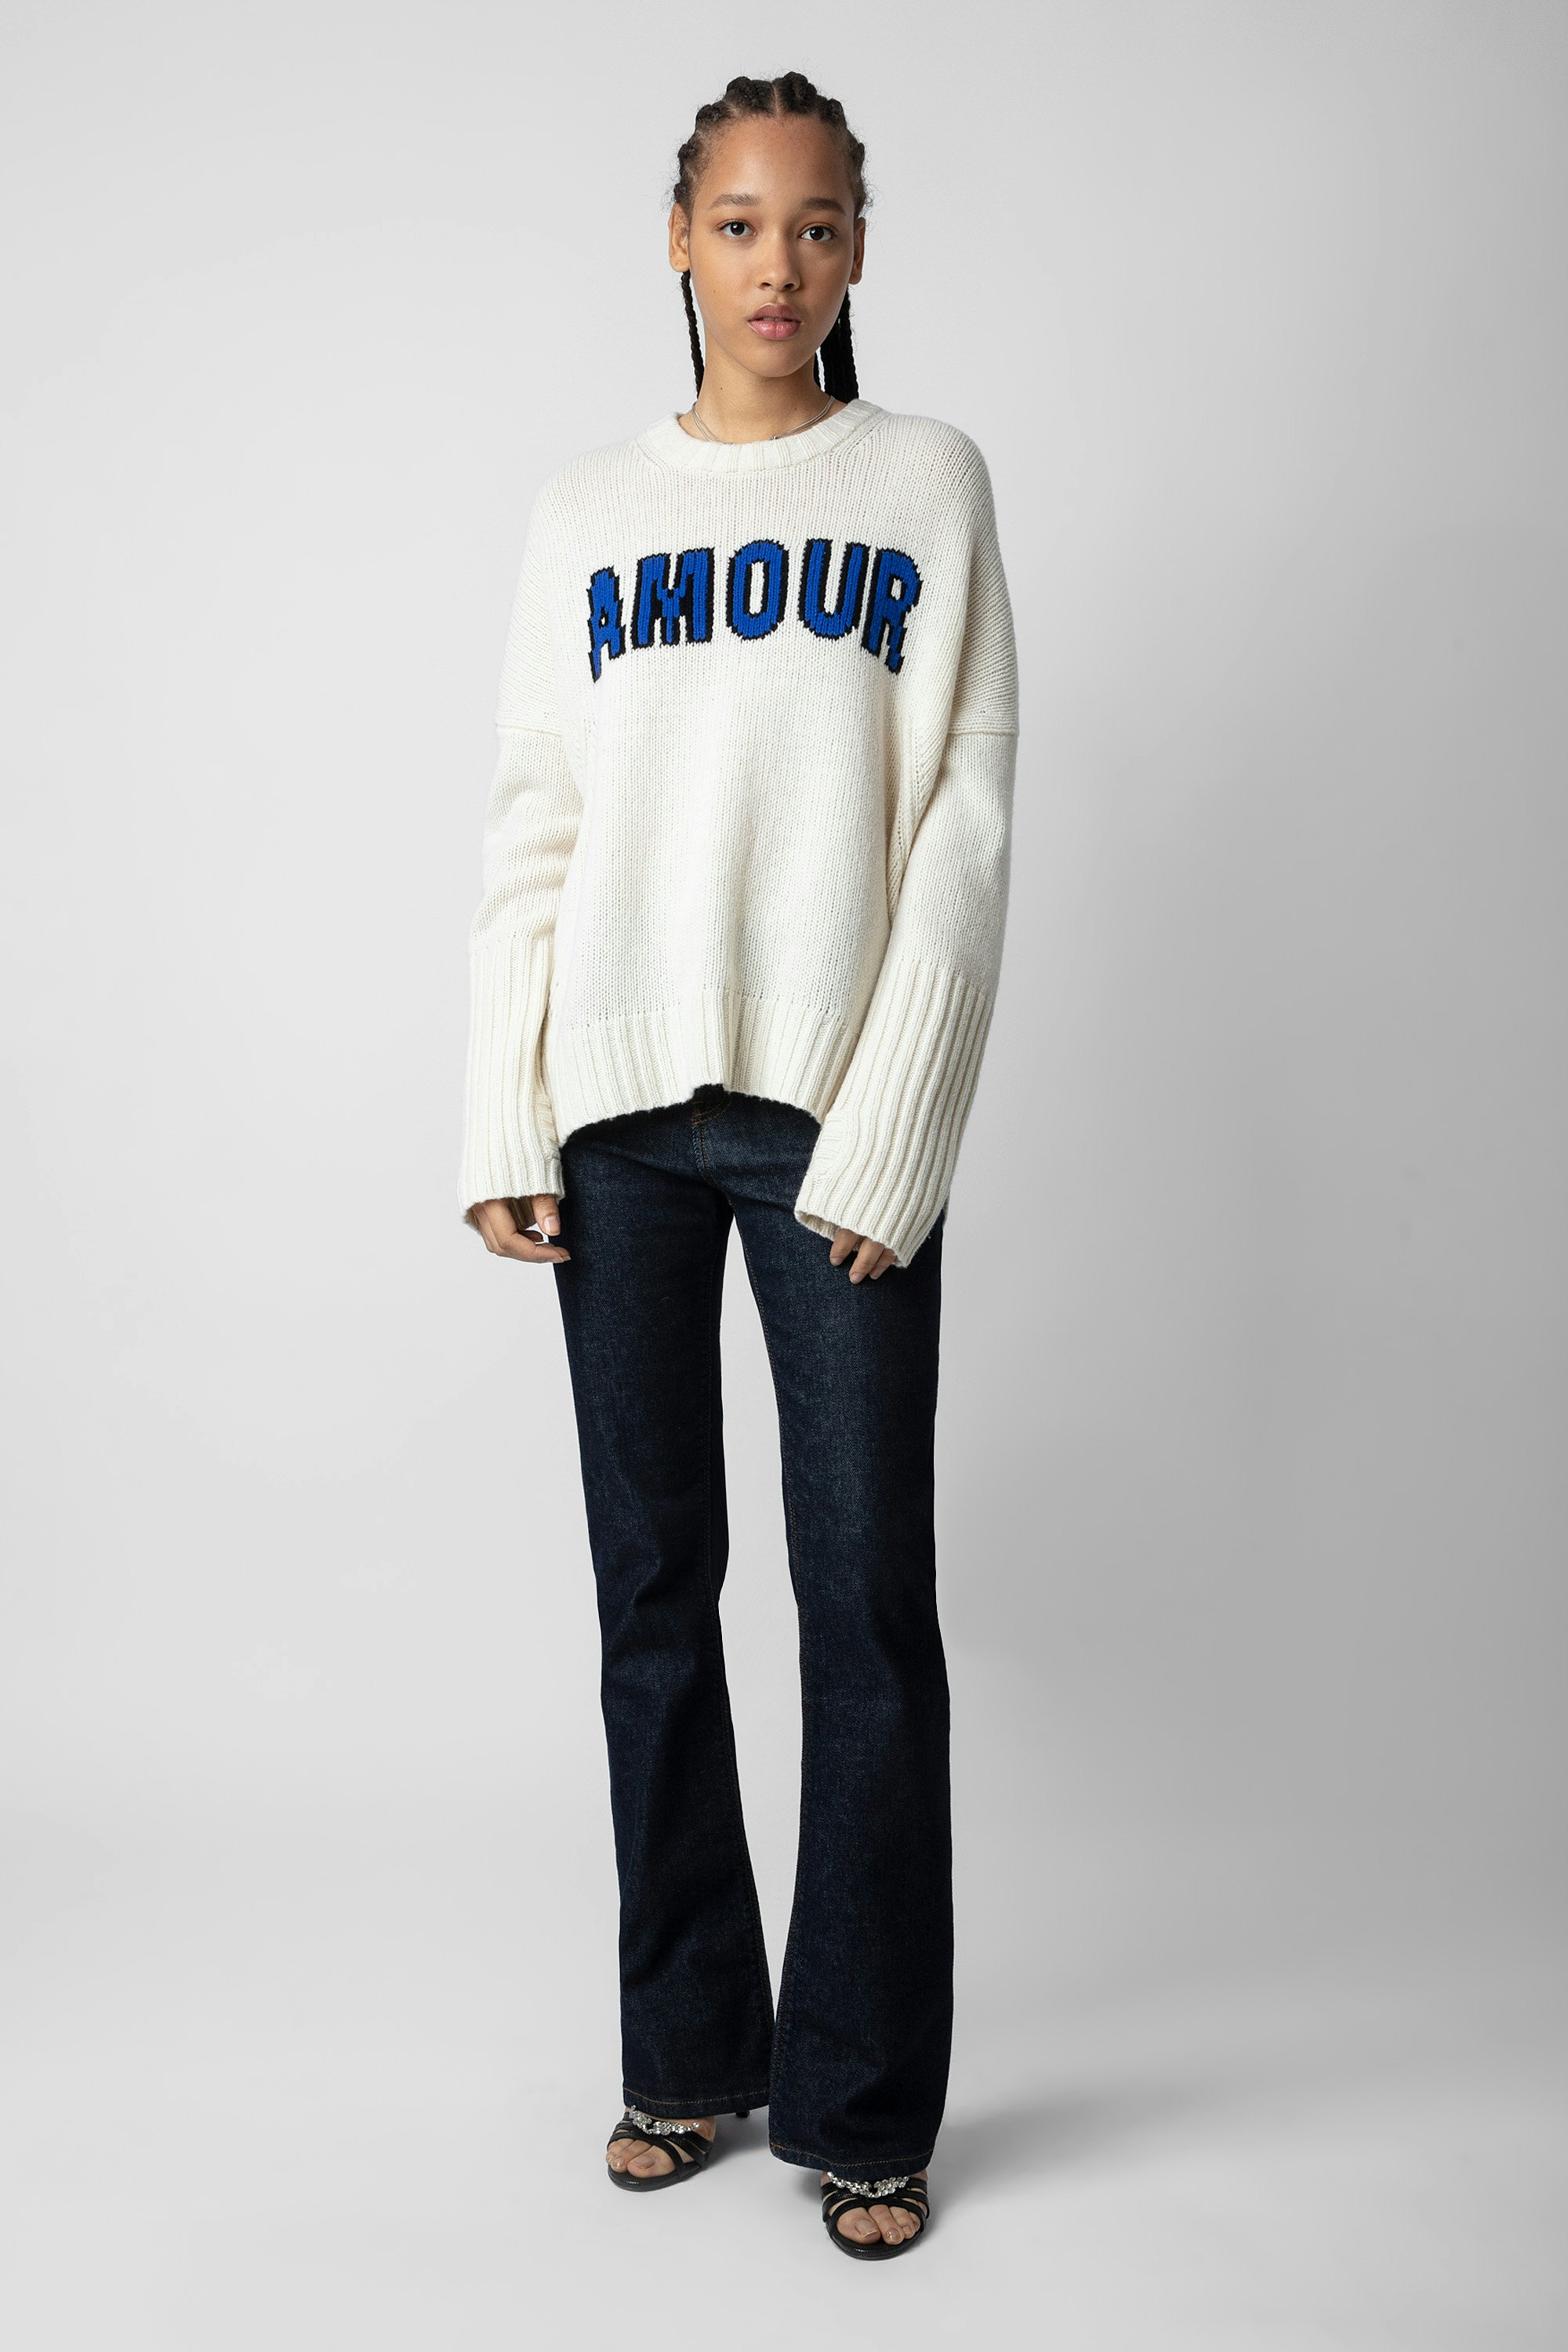 Malta Amour Sweater - Women’s ecru merino wool sweater with intarsia jacquard “Amour” slogan.